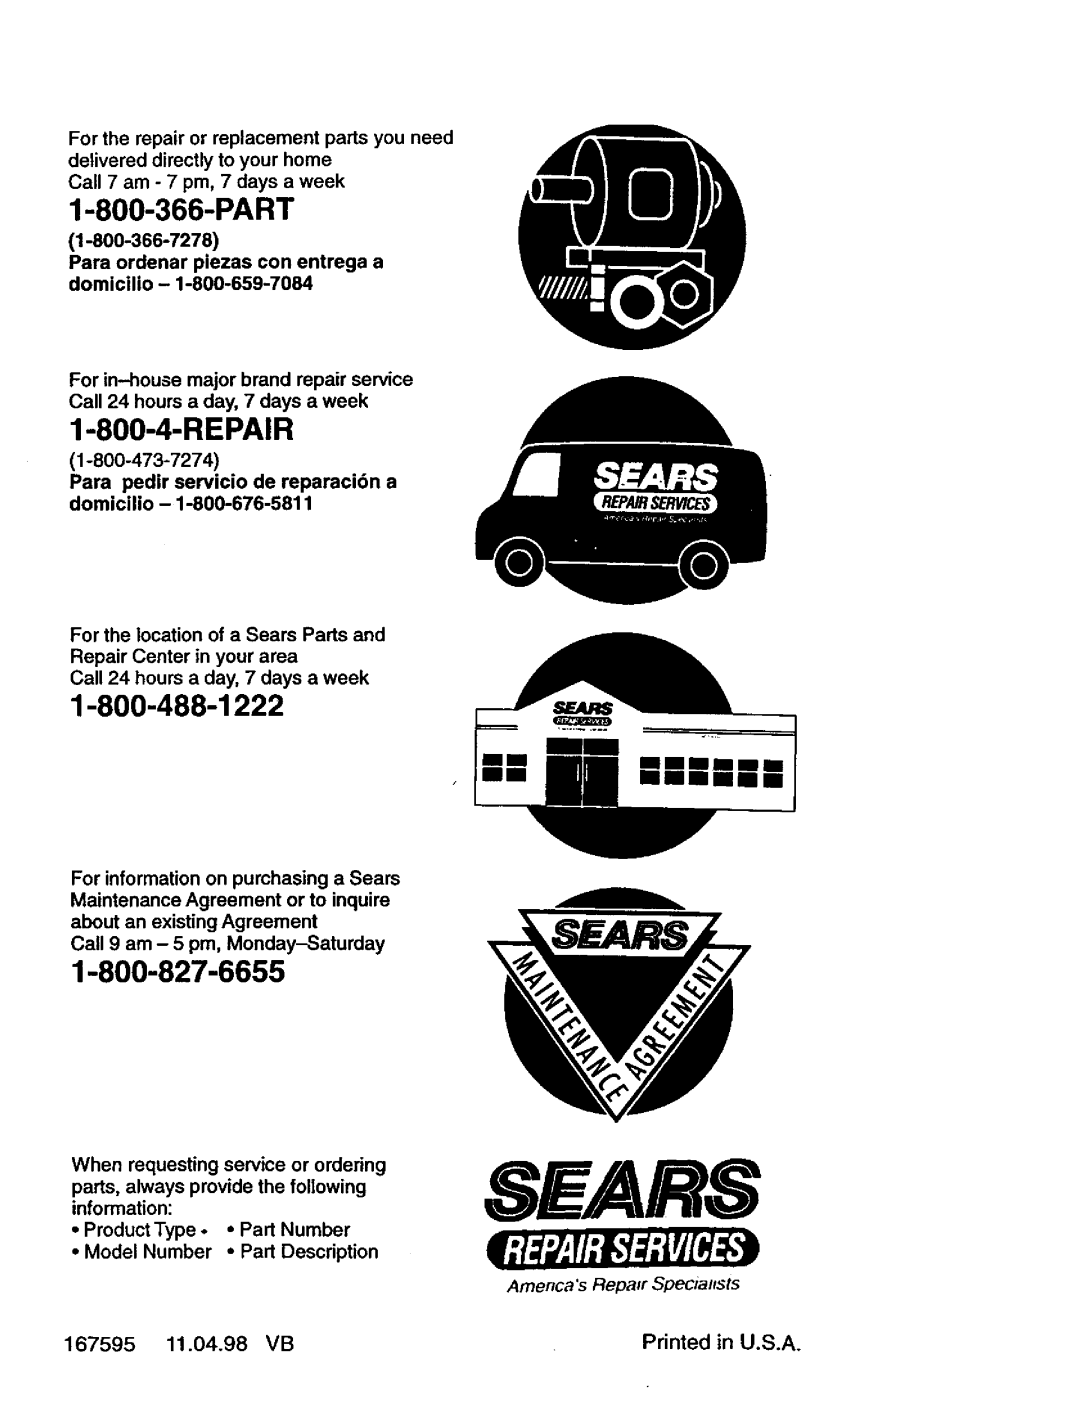 Craftsman 917.387402 owner manual 167595, 11.04.98, Sears, mmmmmm, Amencas Repair SpecialtSt5 